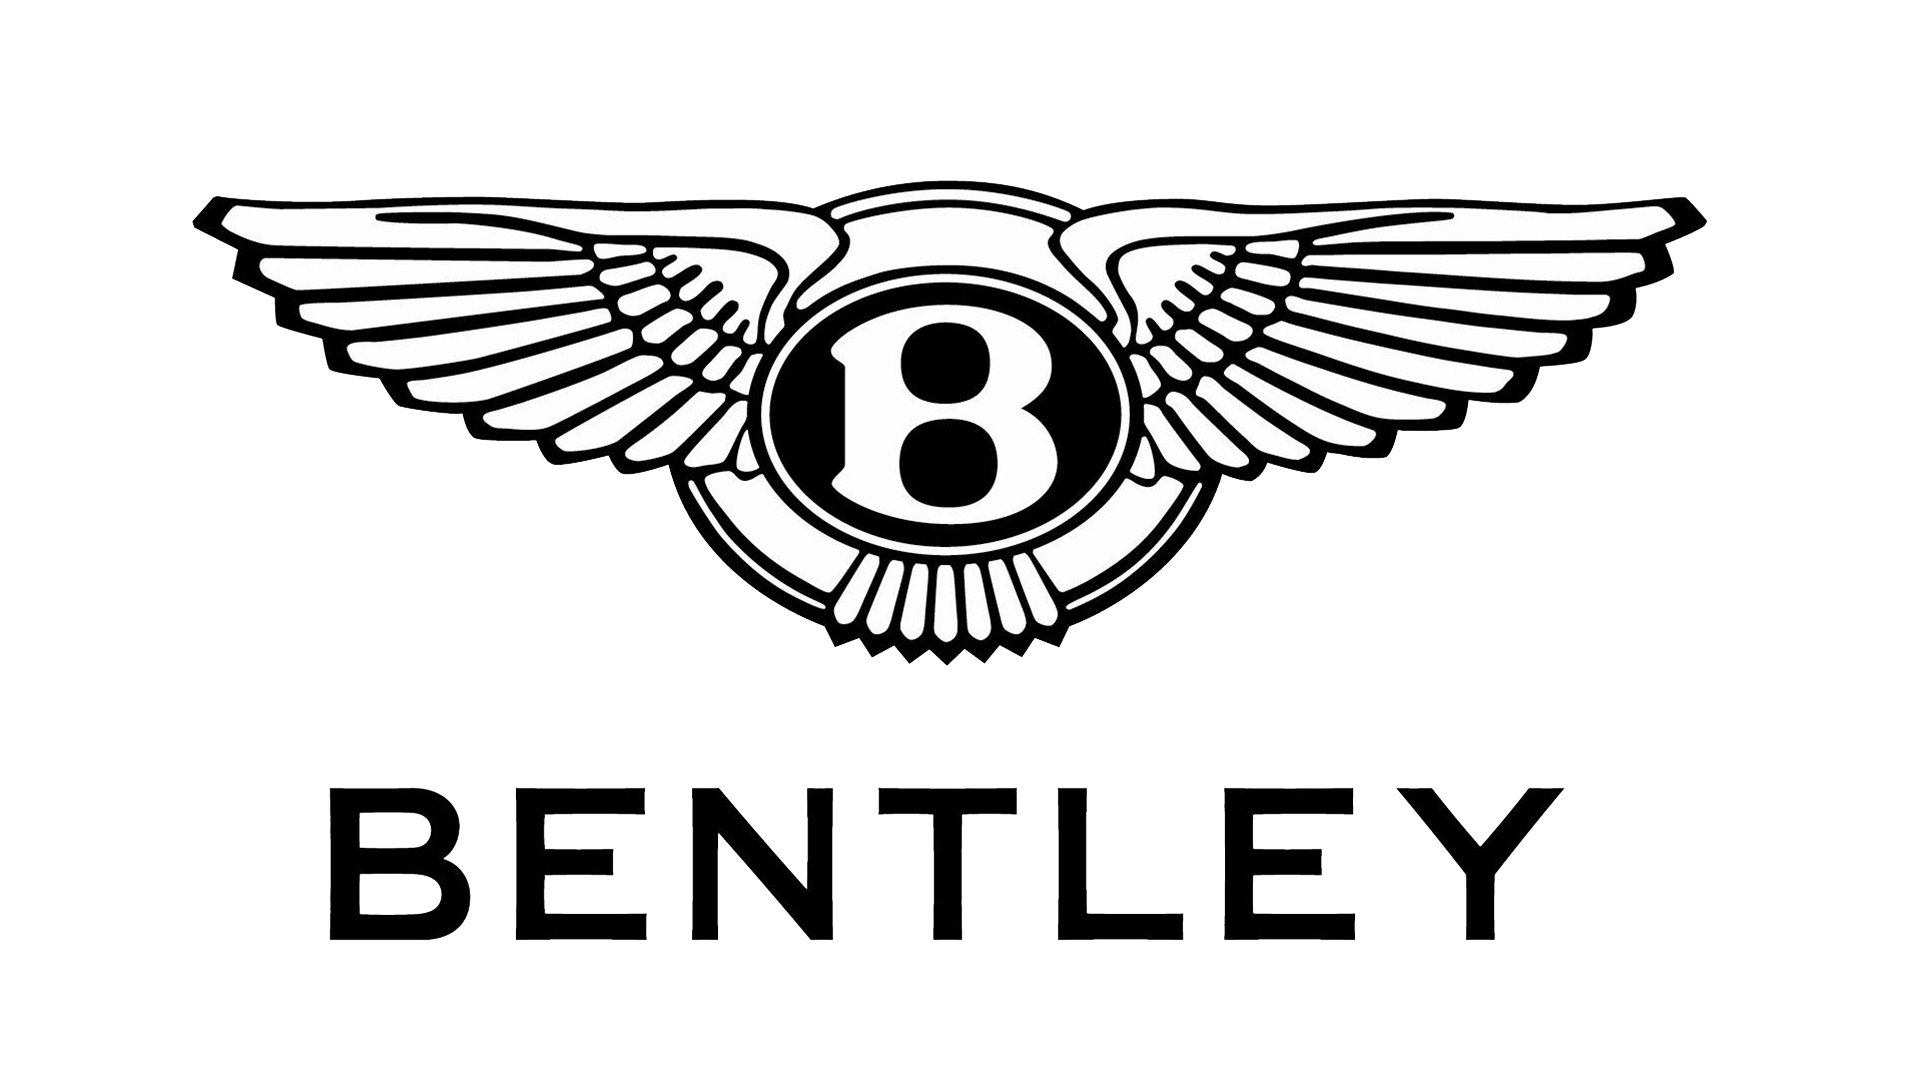 aston martin logo vs bentley logo